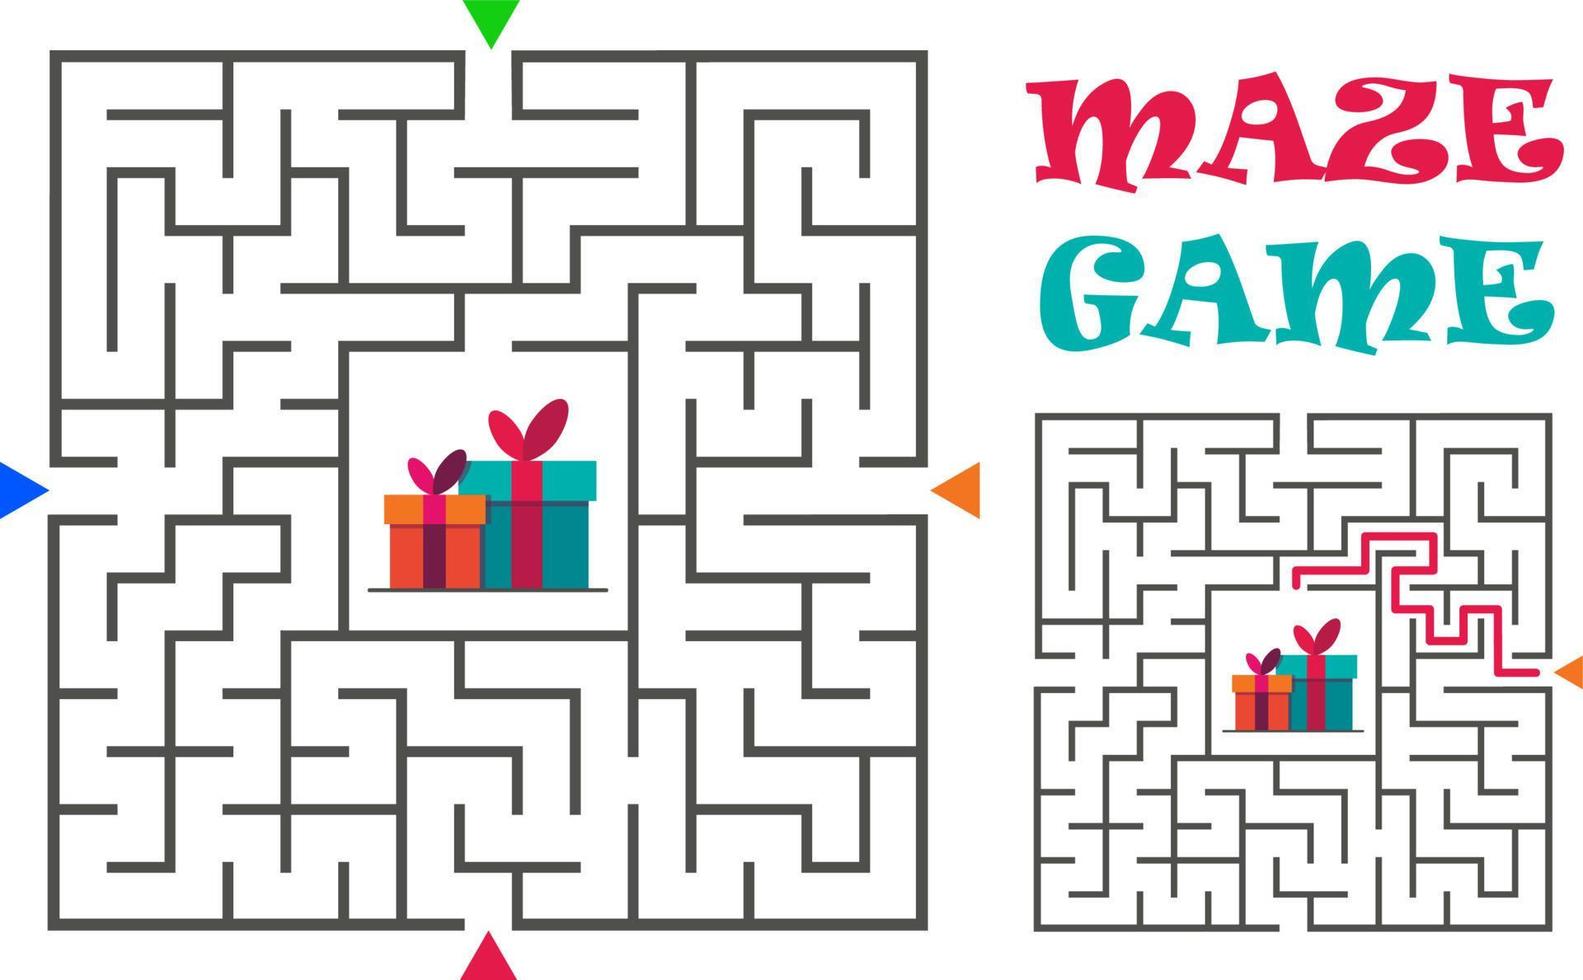 gioco labirinto quadrato per bambini. enigma logico. quattro ingressi e una giusta strada da percorrere. illustrazione piatta vettoriale isolata su sfondo bianco.